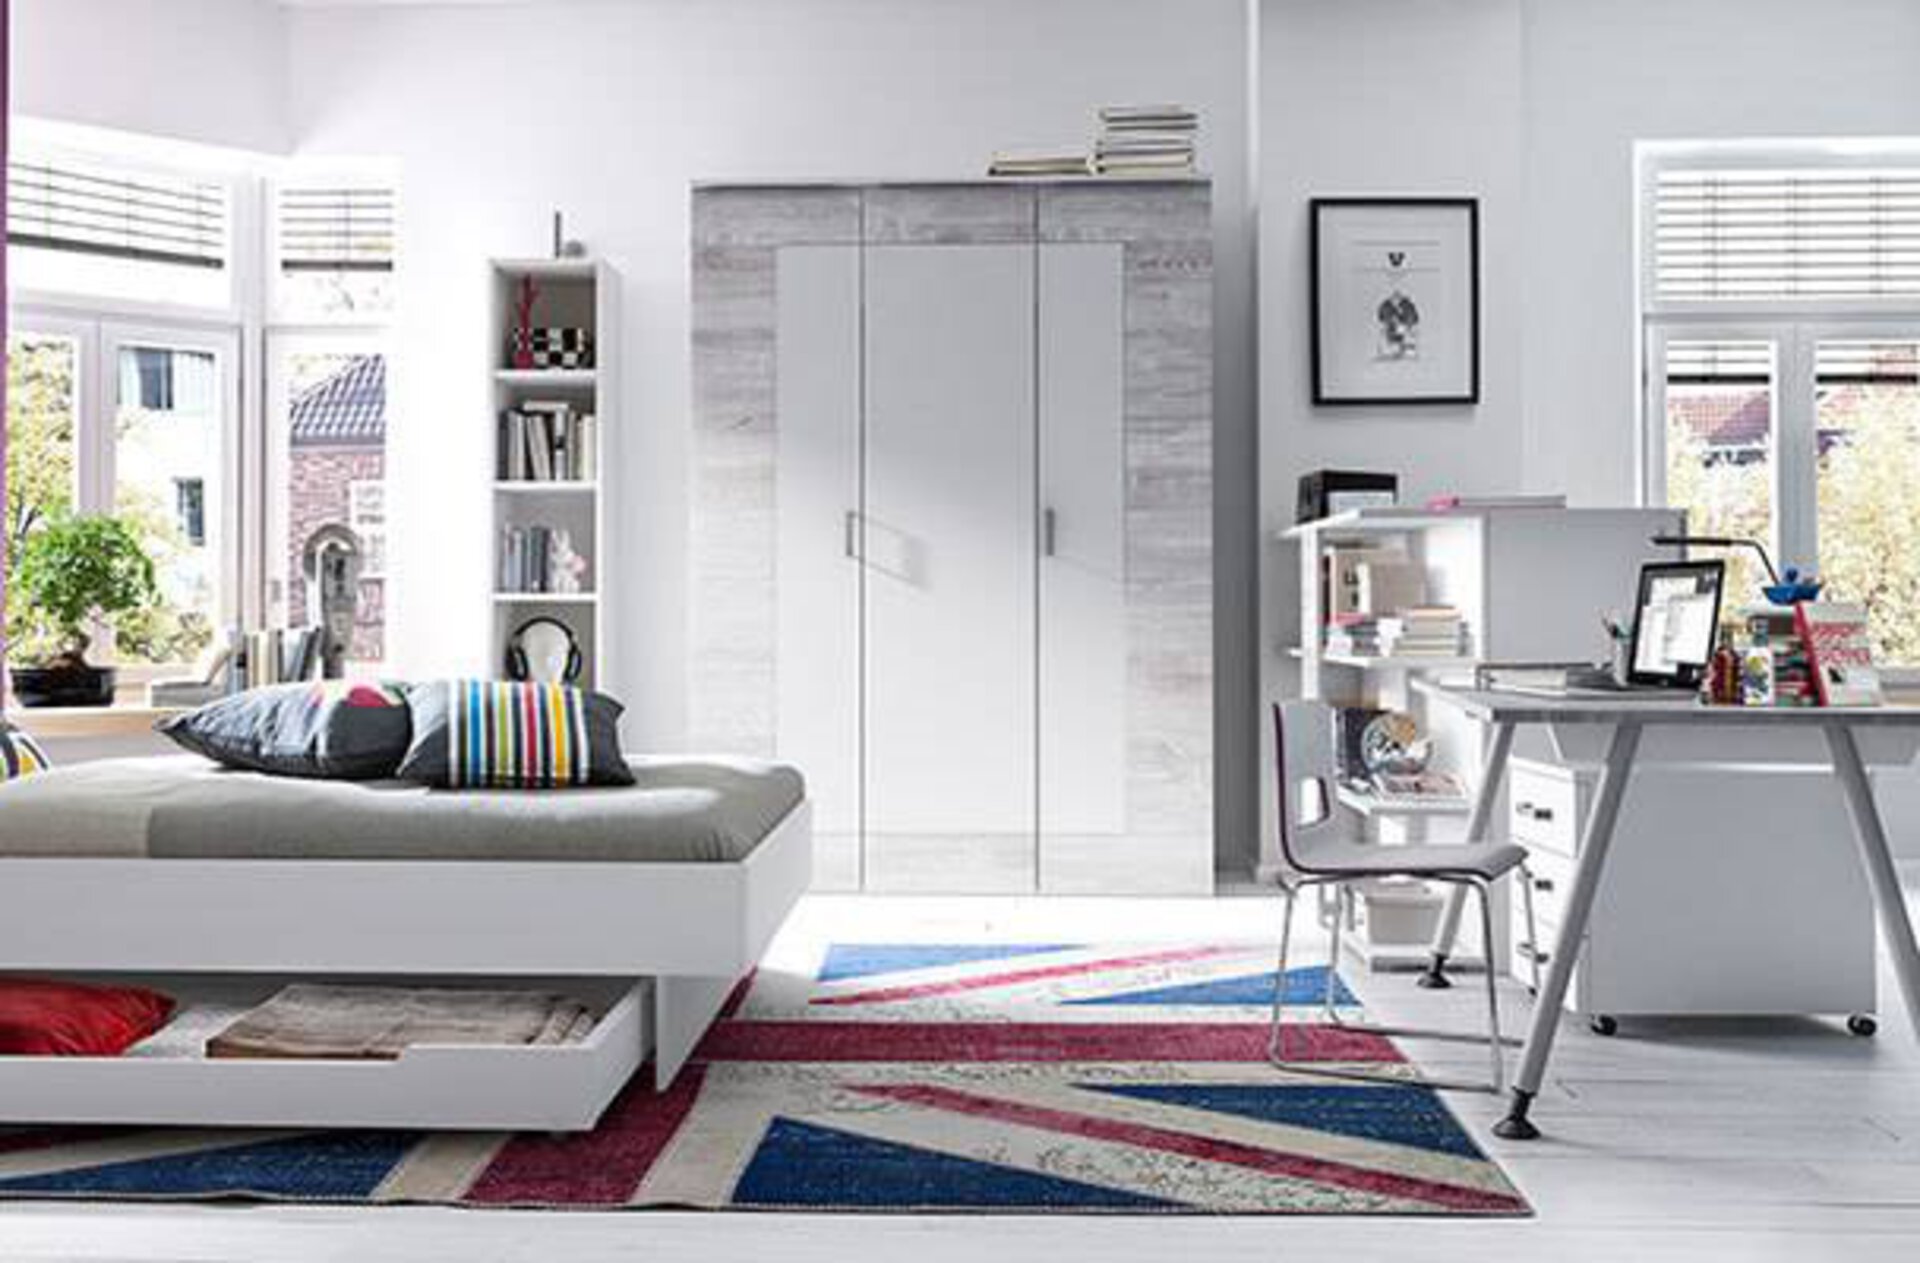 Milieubild zu Kinderzimmer zeigt hell eingerichtetes Jugendzimmer mit Teppich im Union-Flag-Design